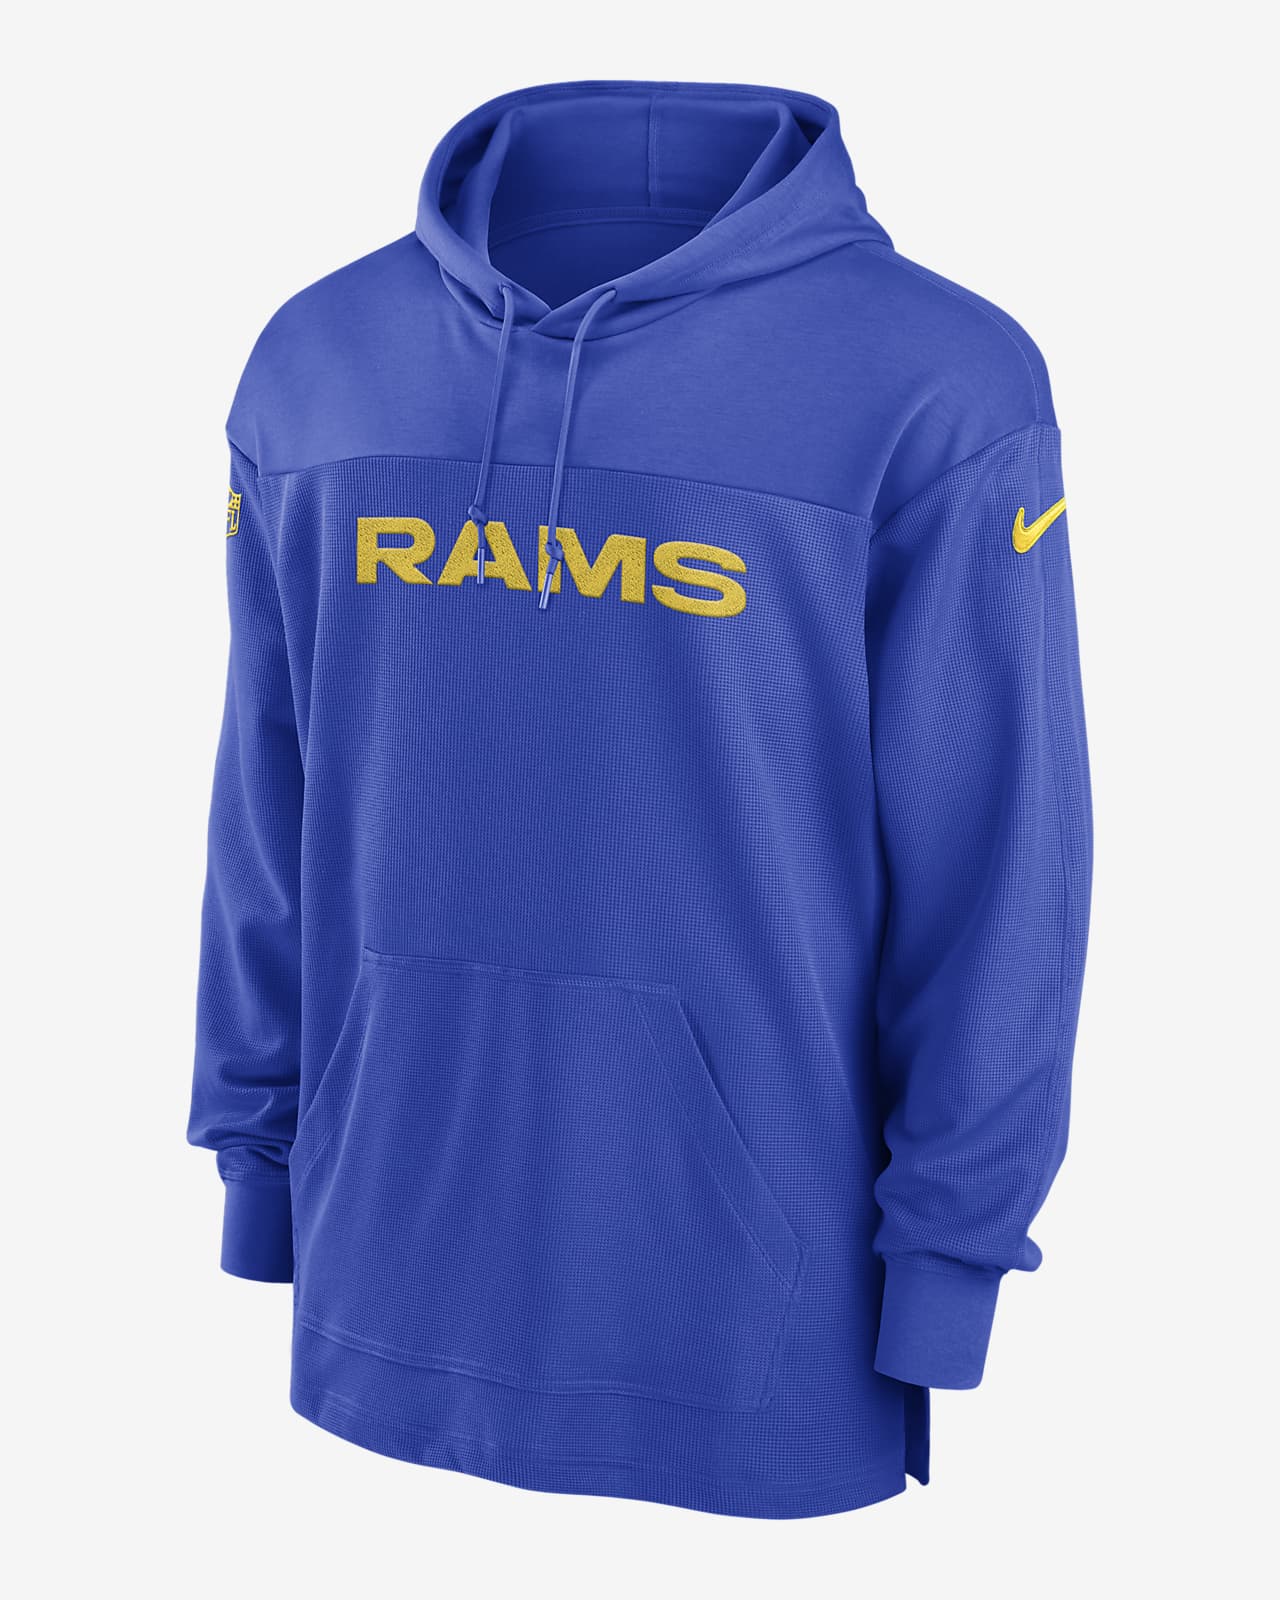 Los Angeles Rams Sideline Men's Nike Dri-FIT NFL Long-Sleeve Hooded Top